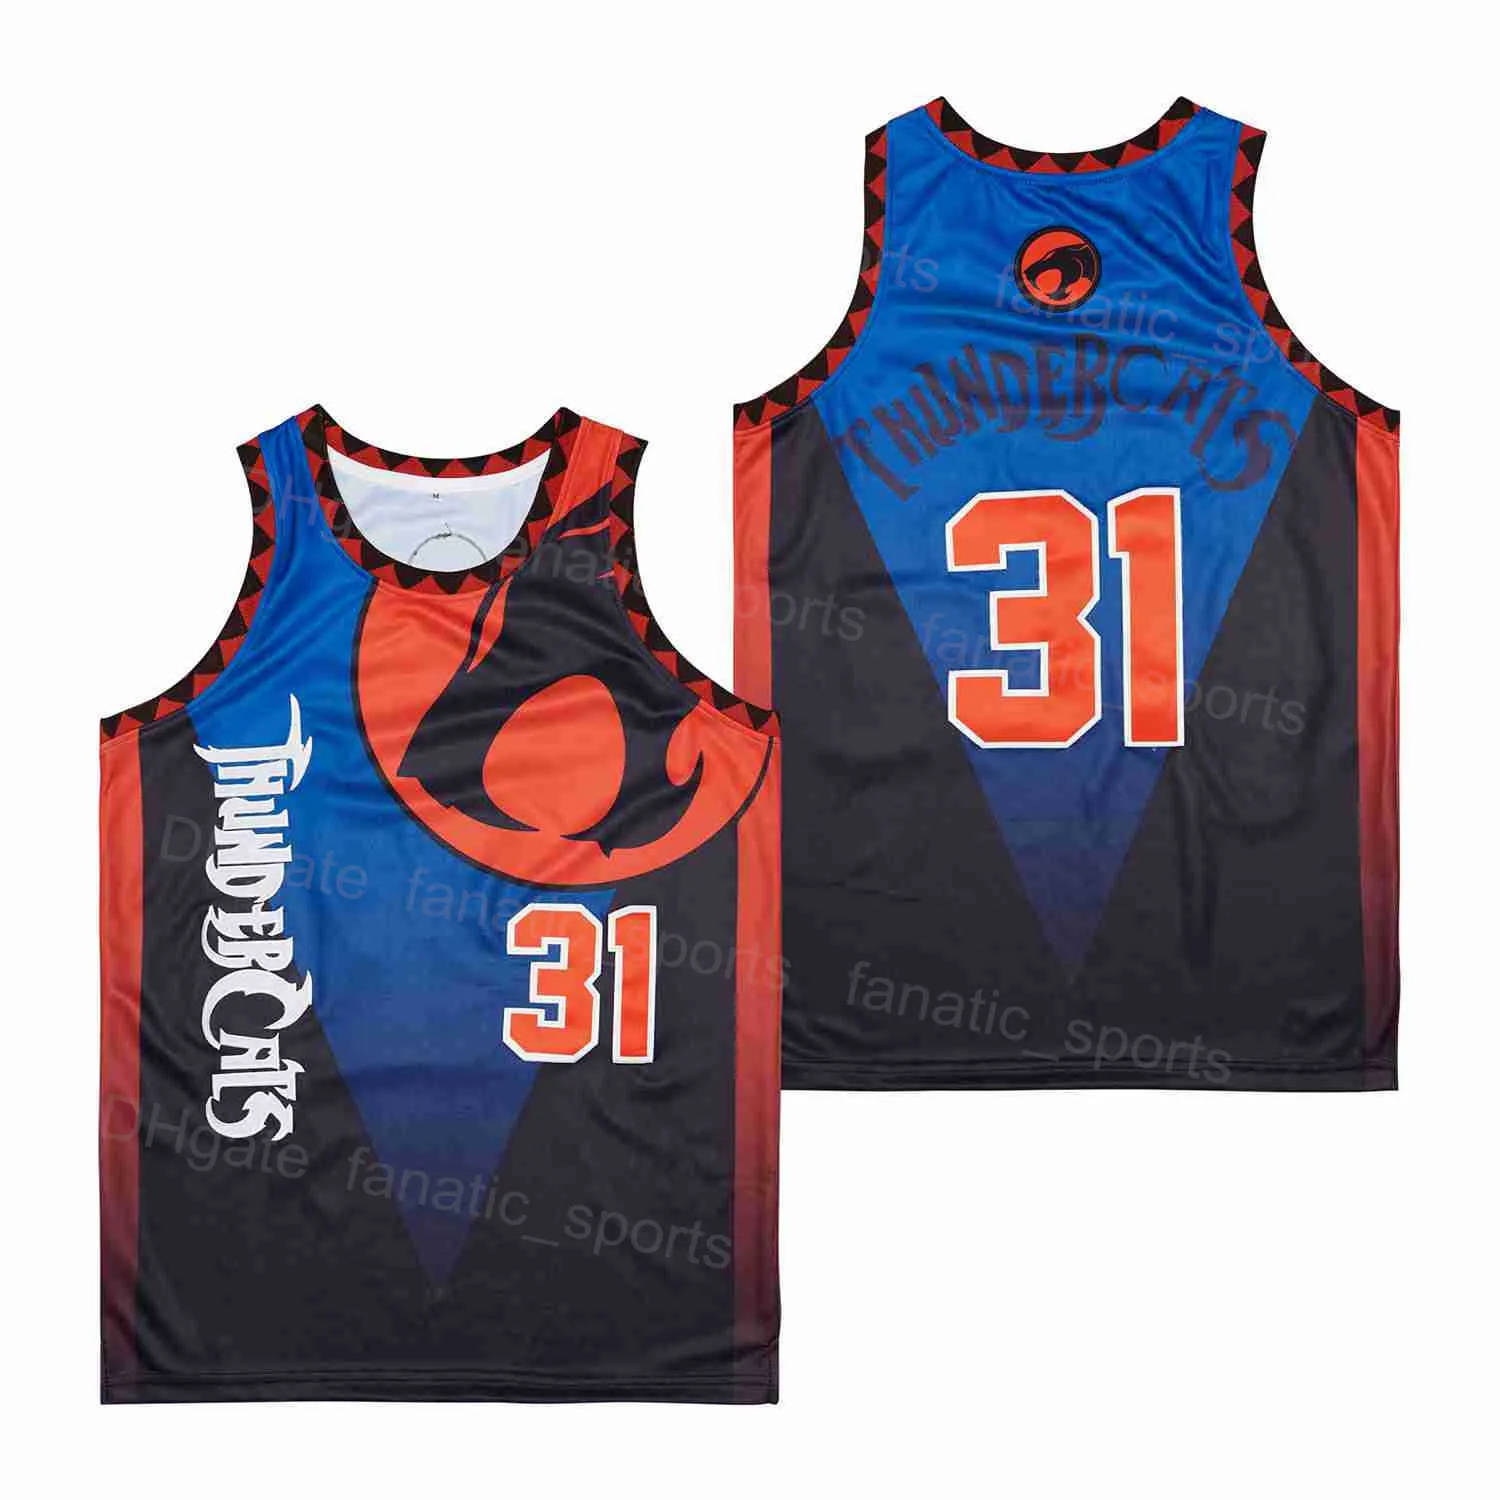 남자 영화 농구 유니폼 31 Thundercats 유니폼 힙합 팀 컬러 스포츠 팬을위한 파란 통기 가능 순수한 면화 자수 및 봉제 우수한 품질